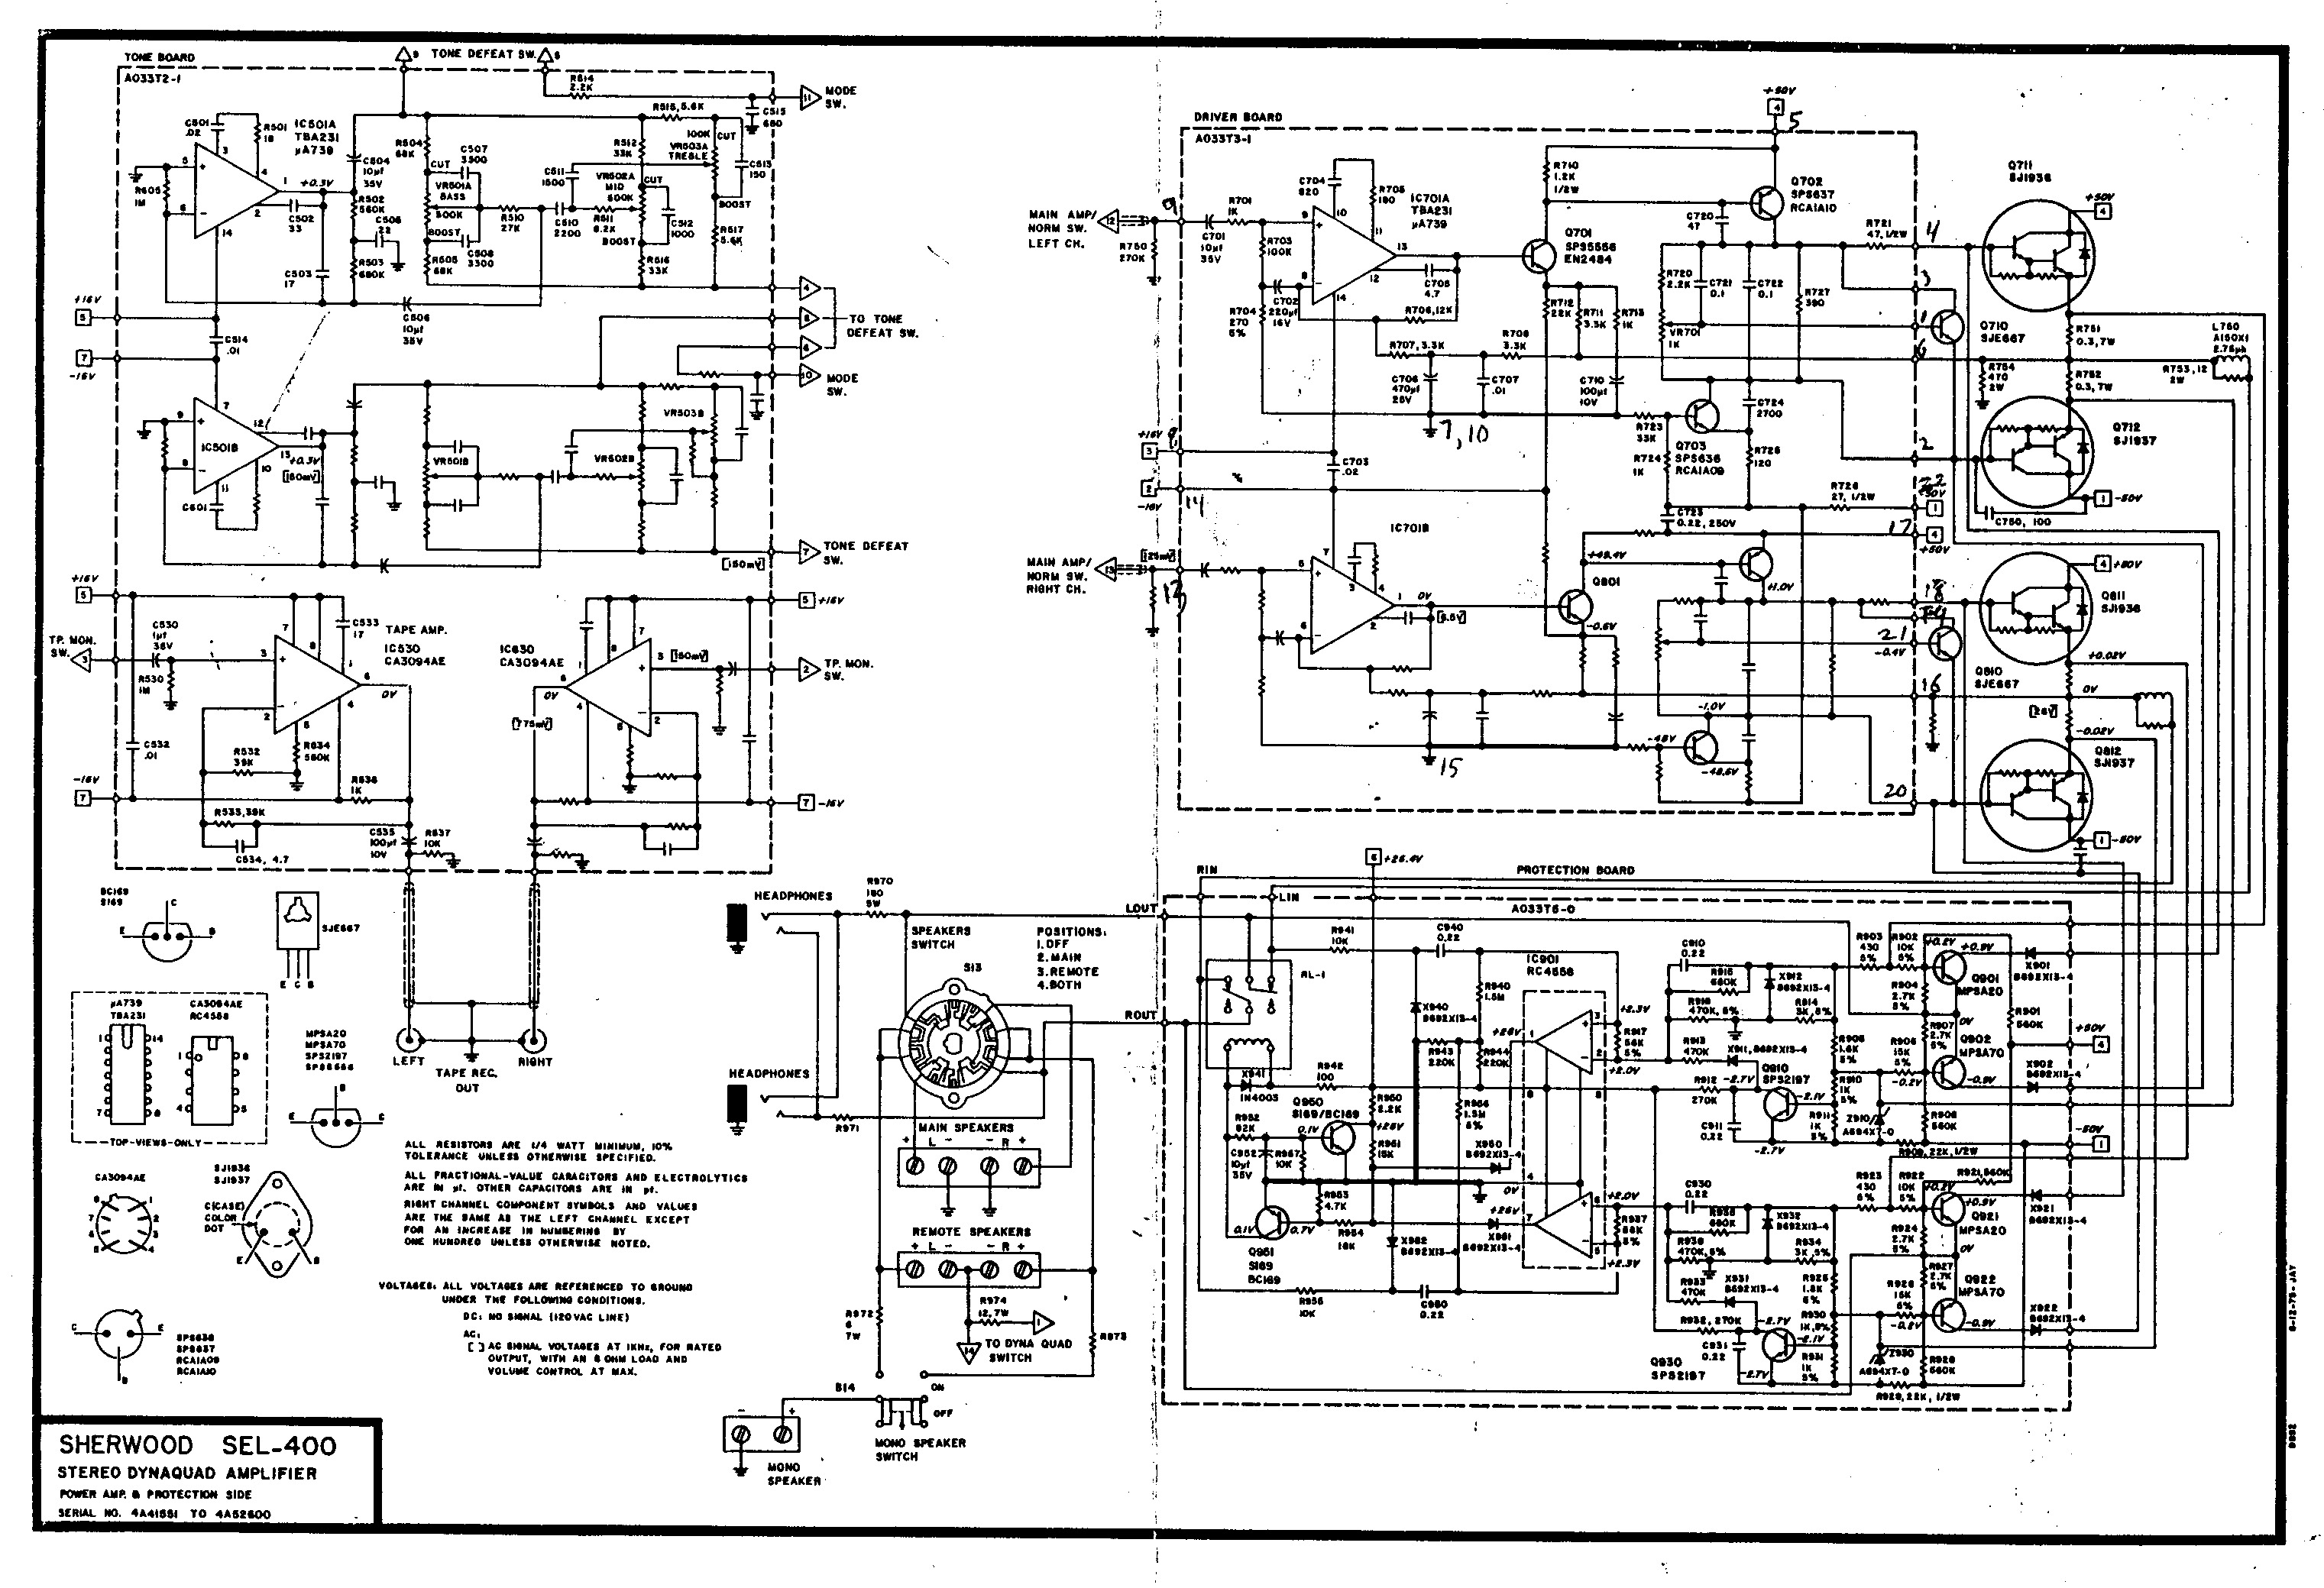 Sherwood_SEL-400_Amplifier.pdf